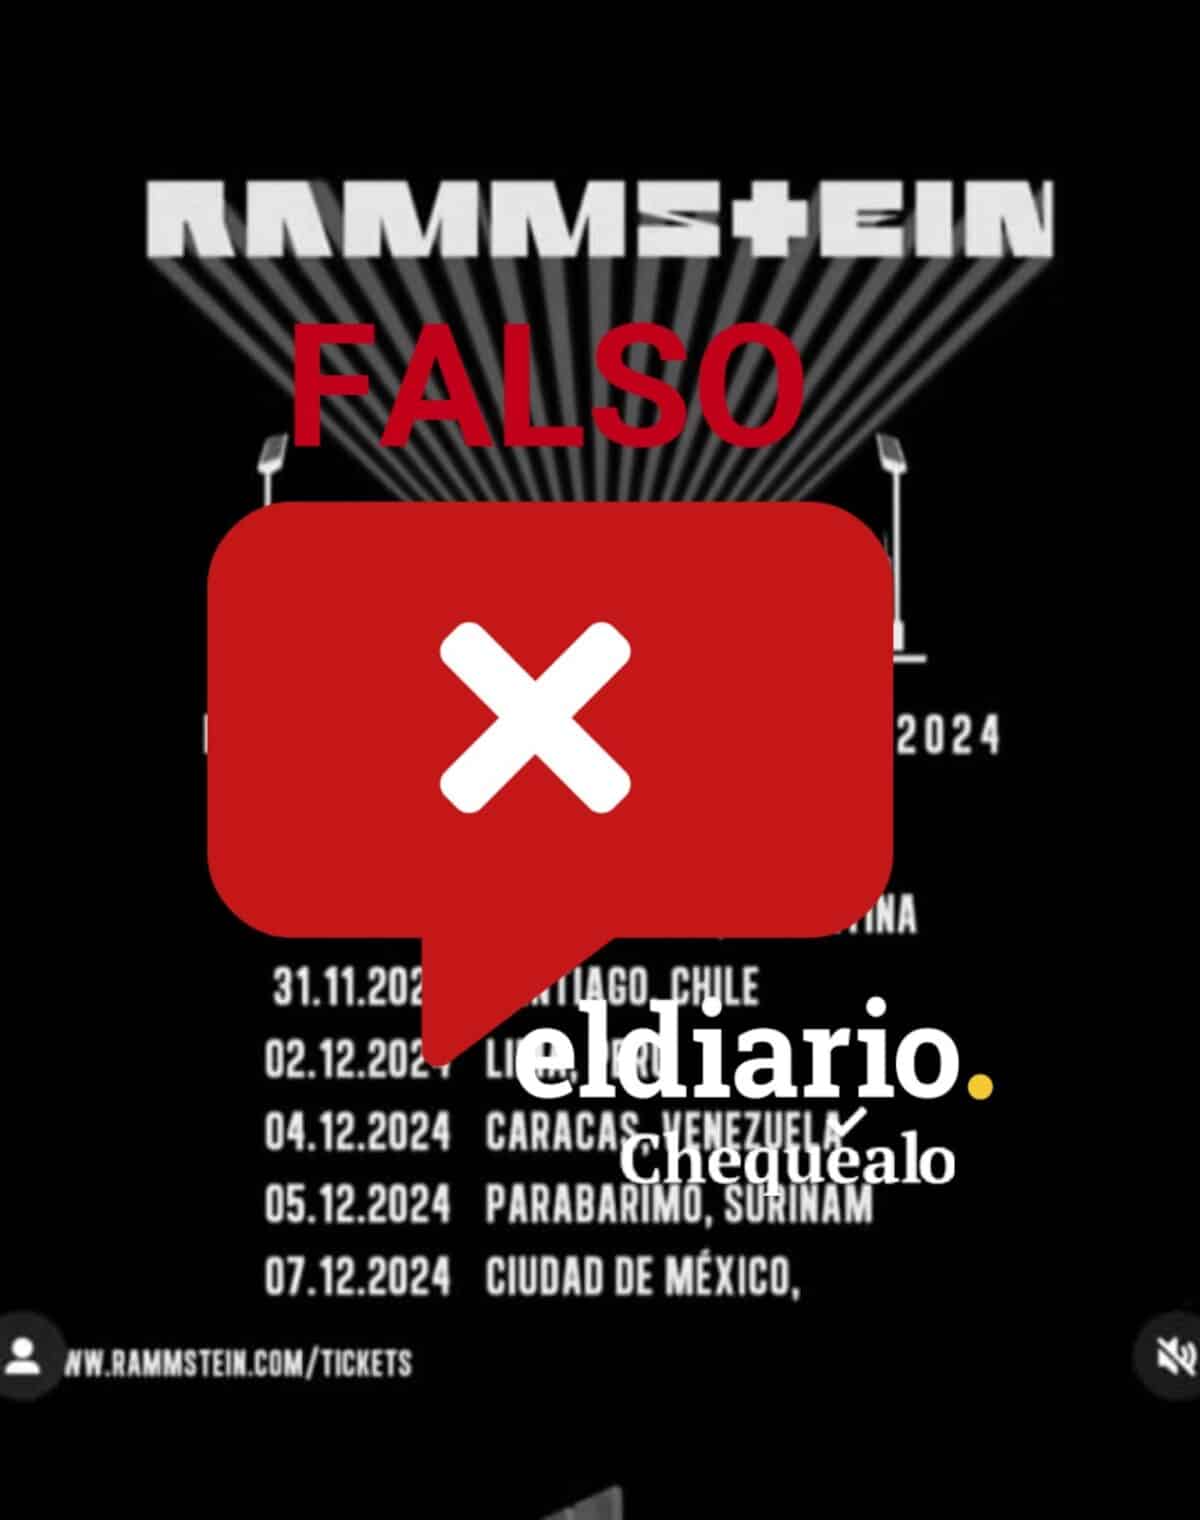 ¿La banda de rock alemana Rammstein se presentará en Caracas en diciembre de 2024?